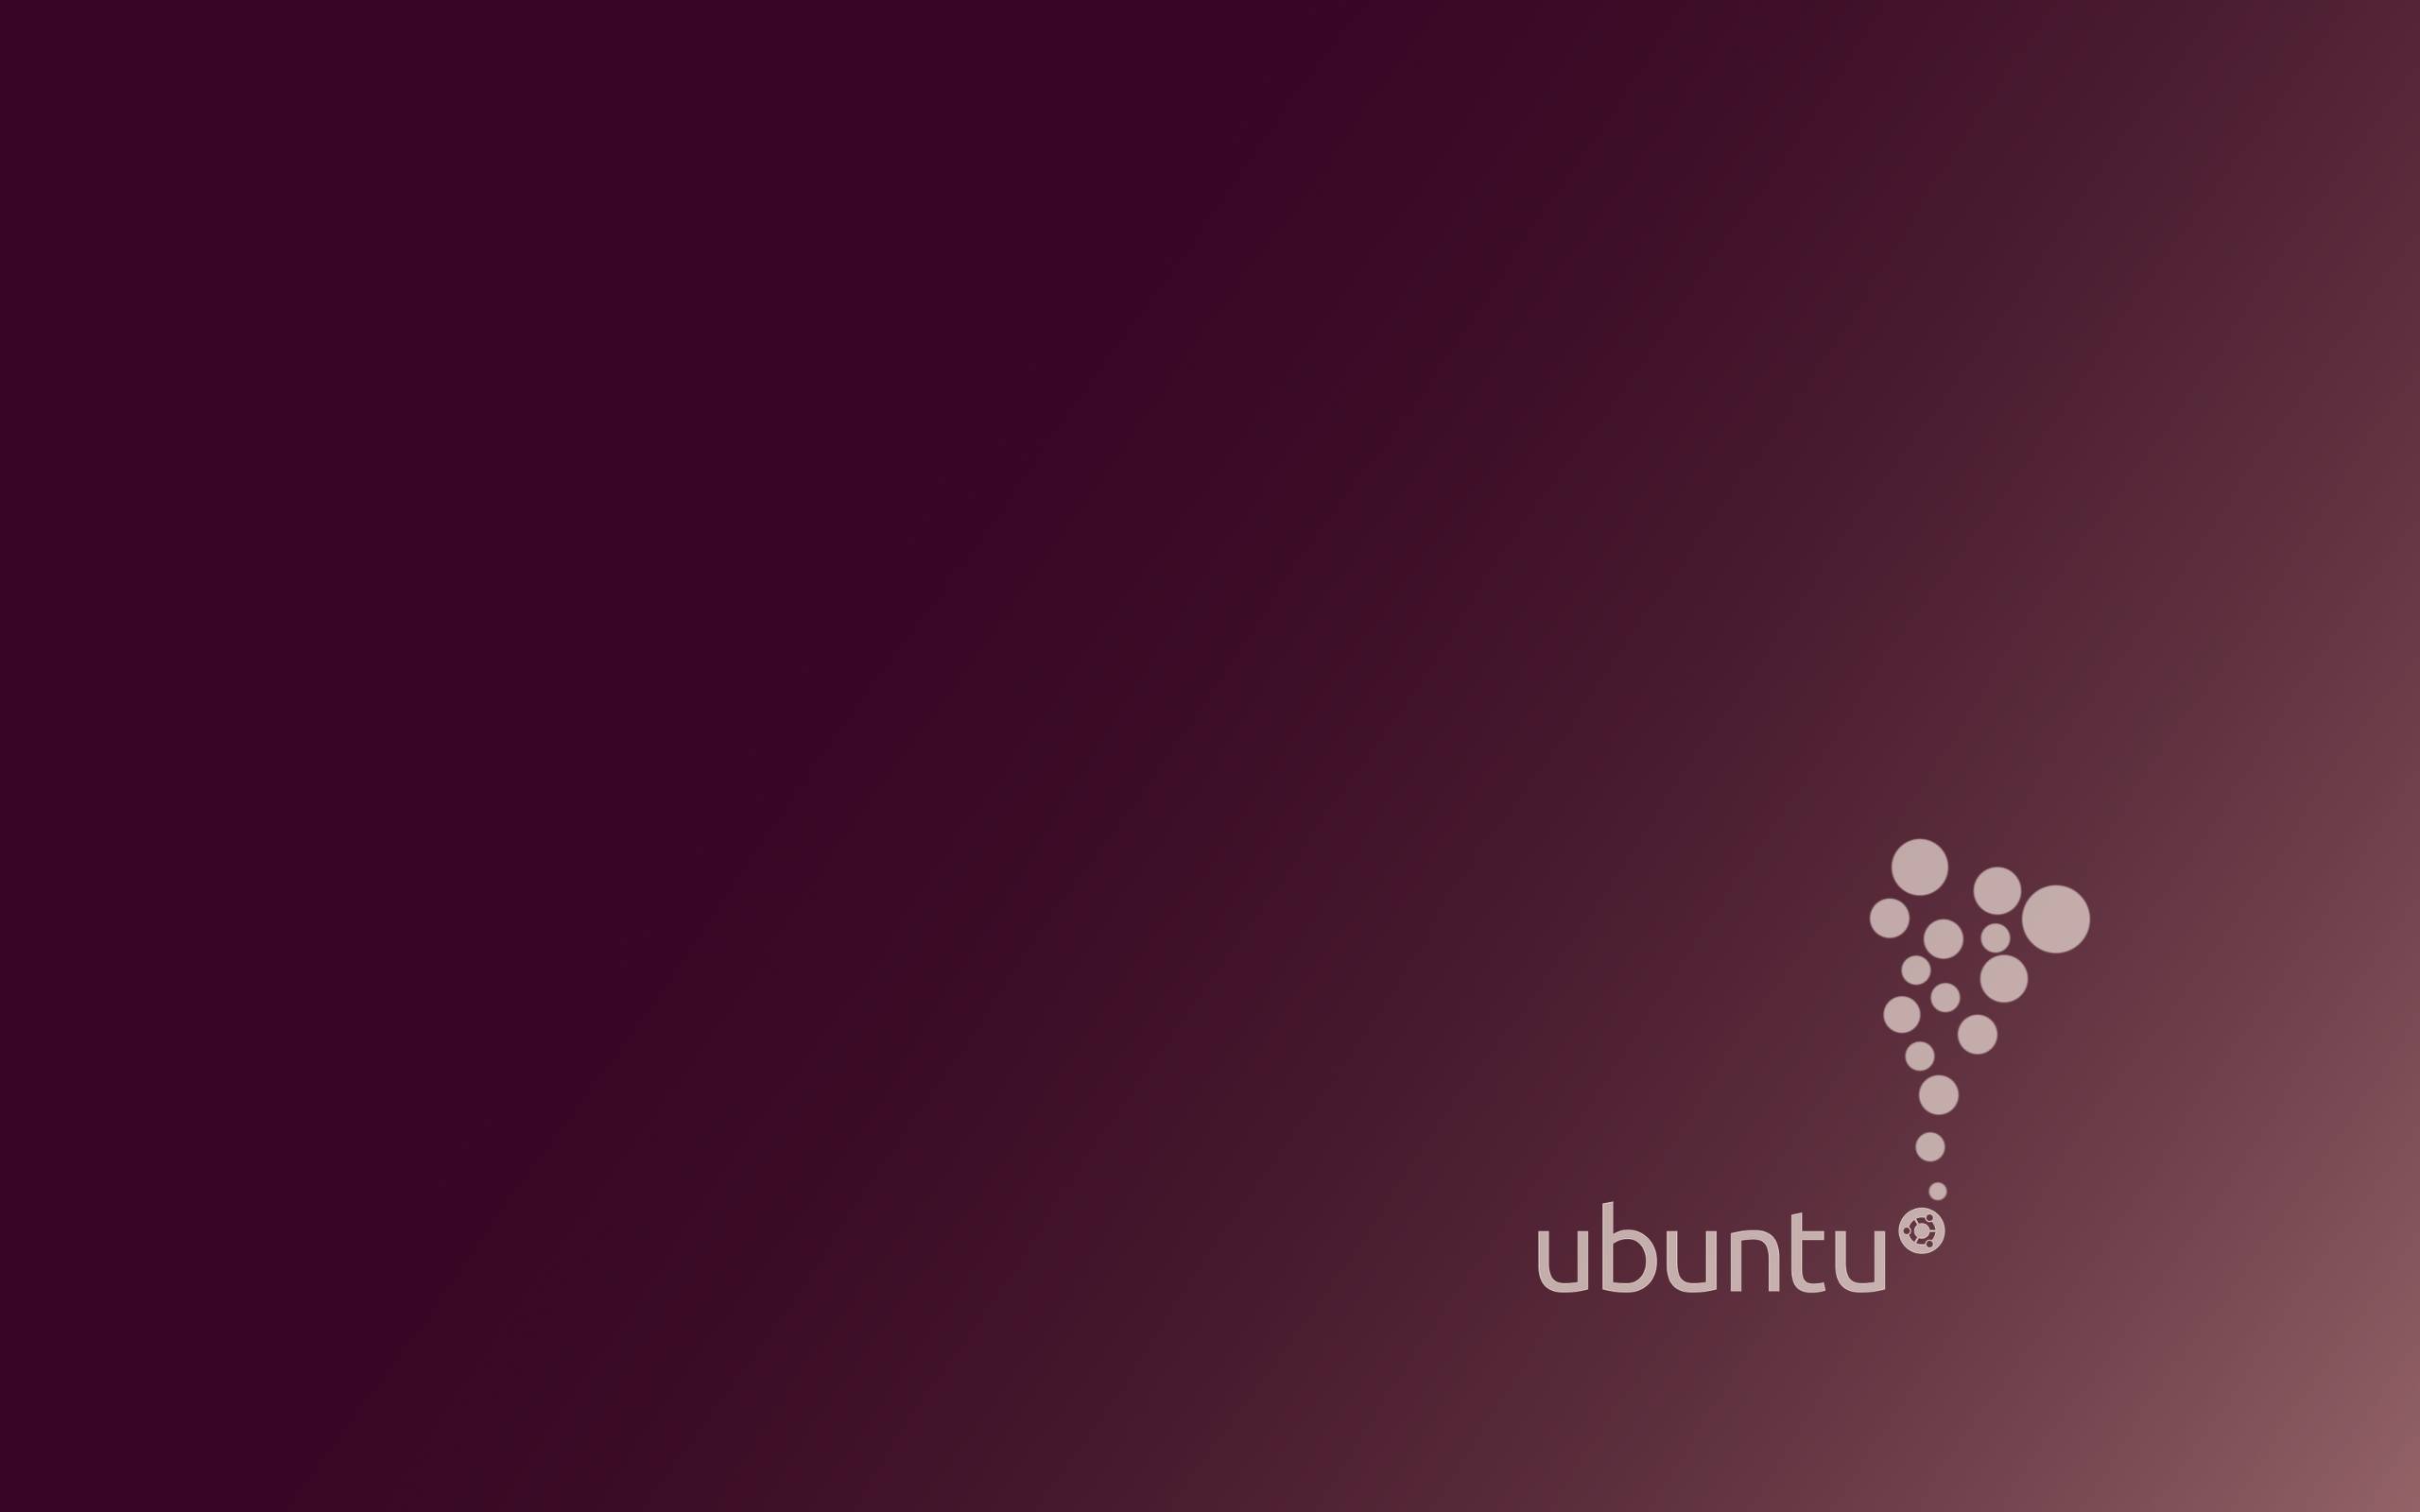 Cool Ubuntu Wallpaper Linux 15970 Wallpaper. Cool